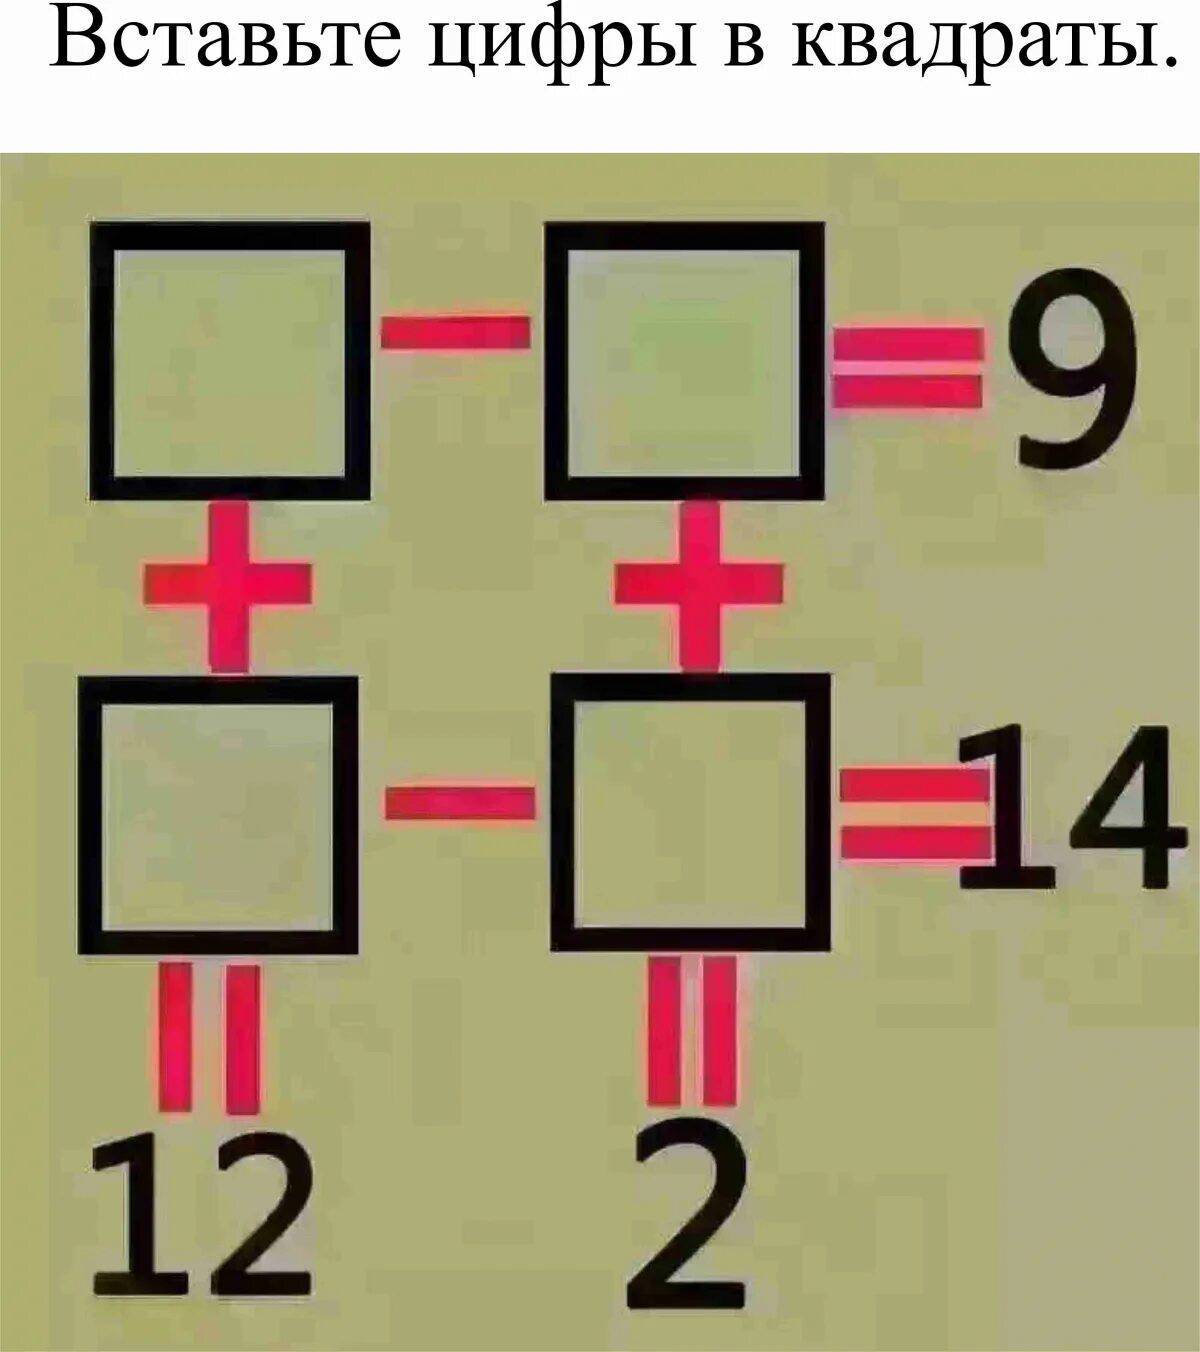 решение математических задач по фото